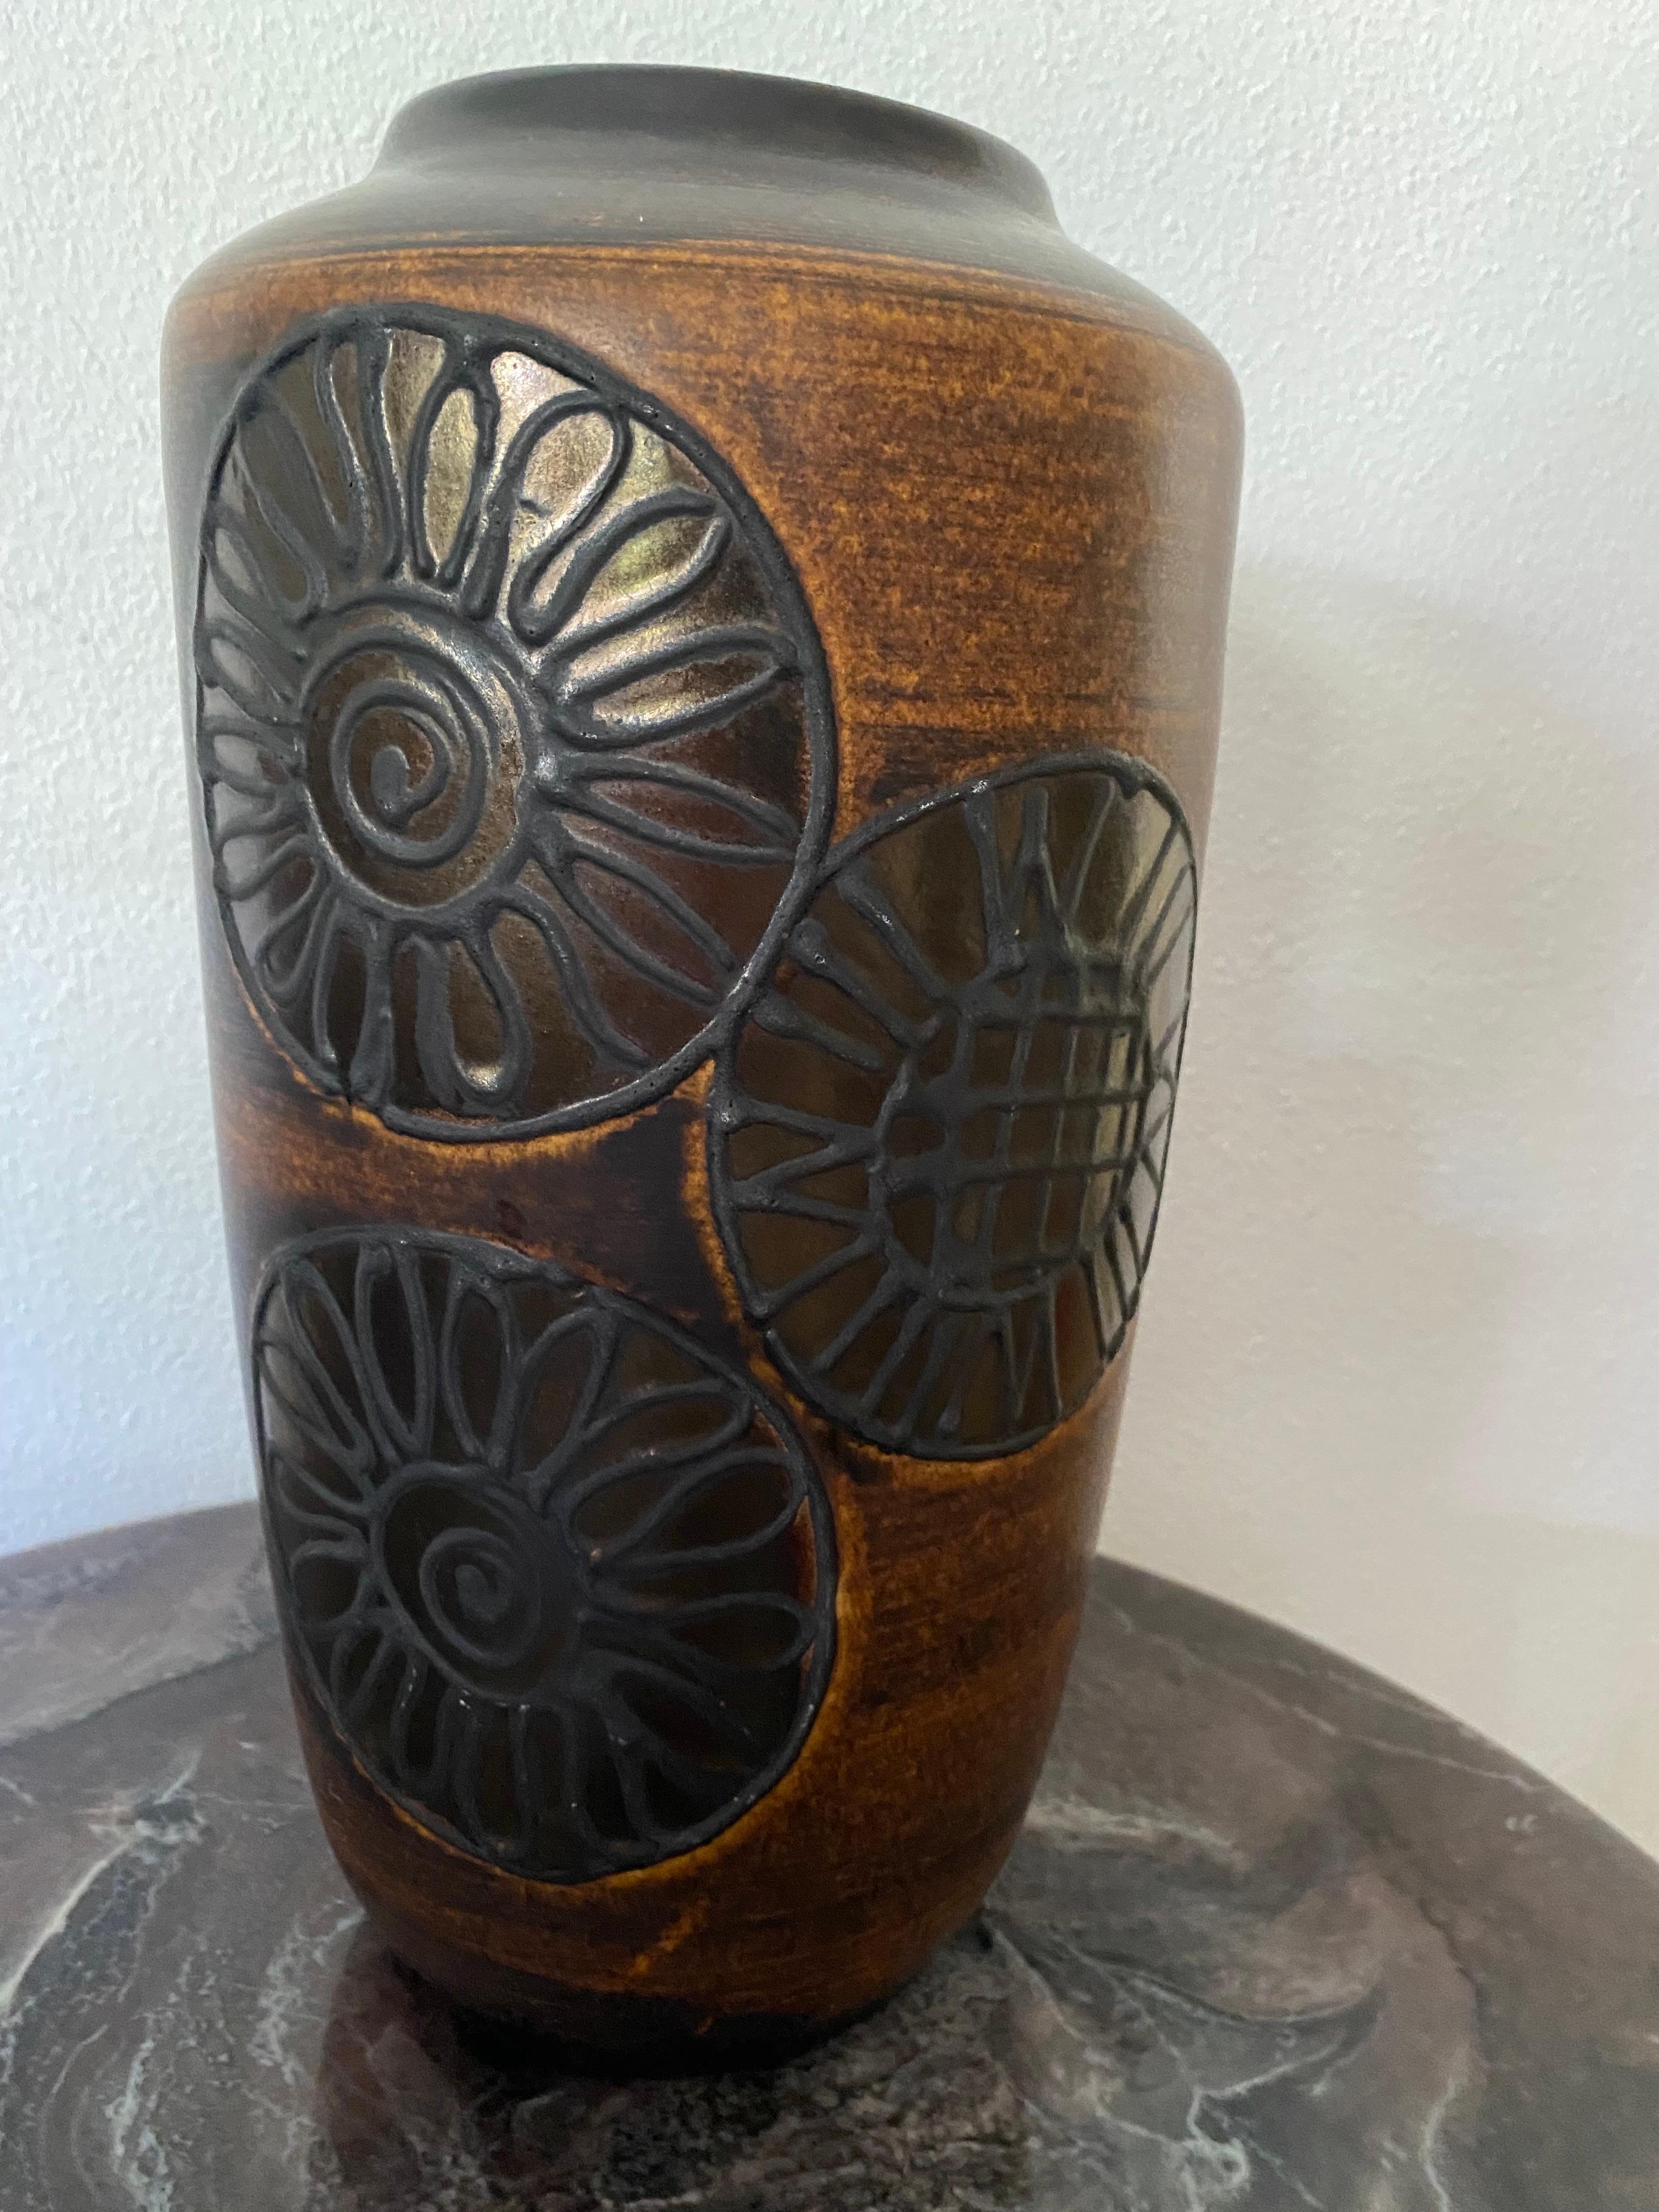 Un vase Fat Lava très recherché de Scheurich Keramik. Le superbe vase est Hughes et à mon avis, il ne devrait pas être utilisé comme un vase mais plutôt comme une sculpture. 

